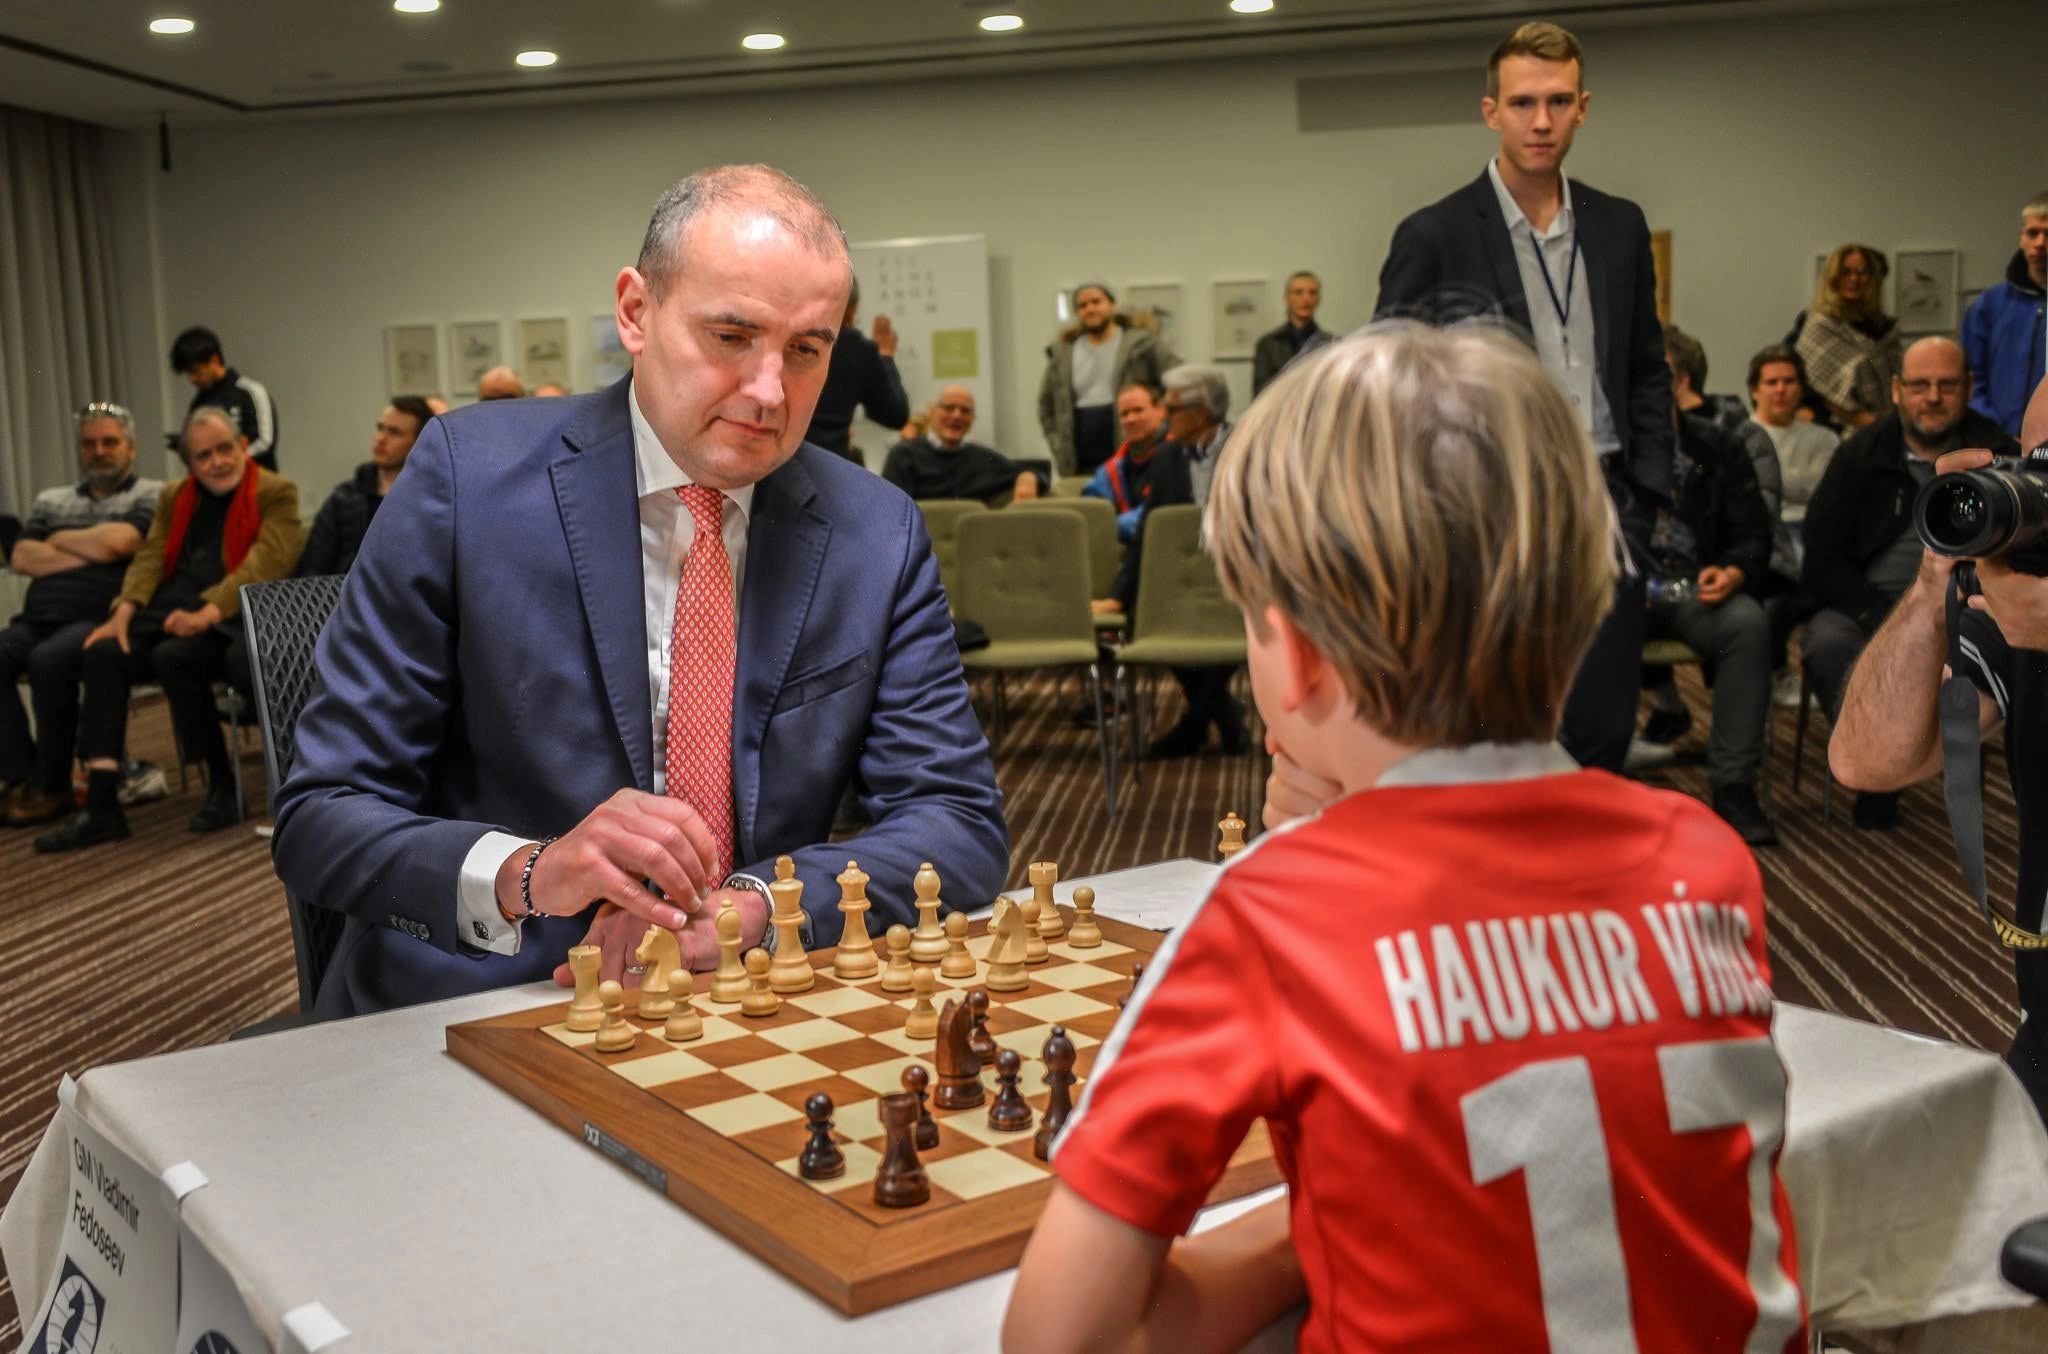 Chess player diddi10 (Finnur Kr. Finnsson from Reykjavk, Iceland) - GameKnot